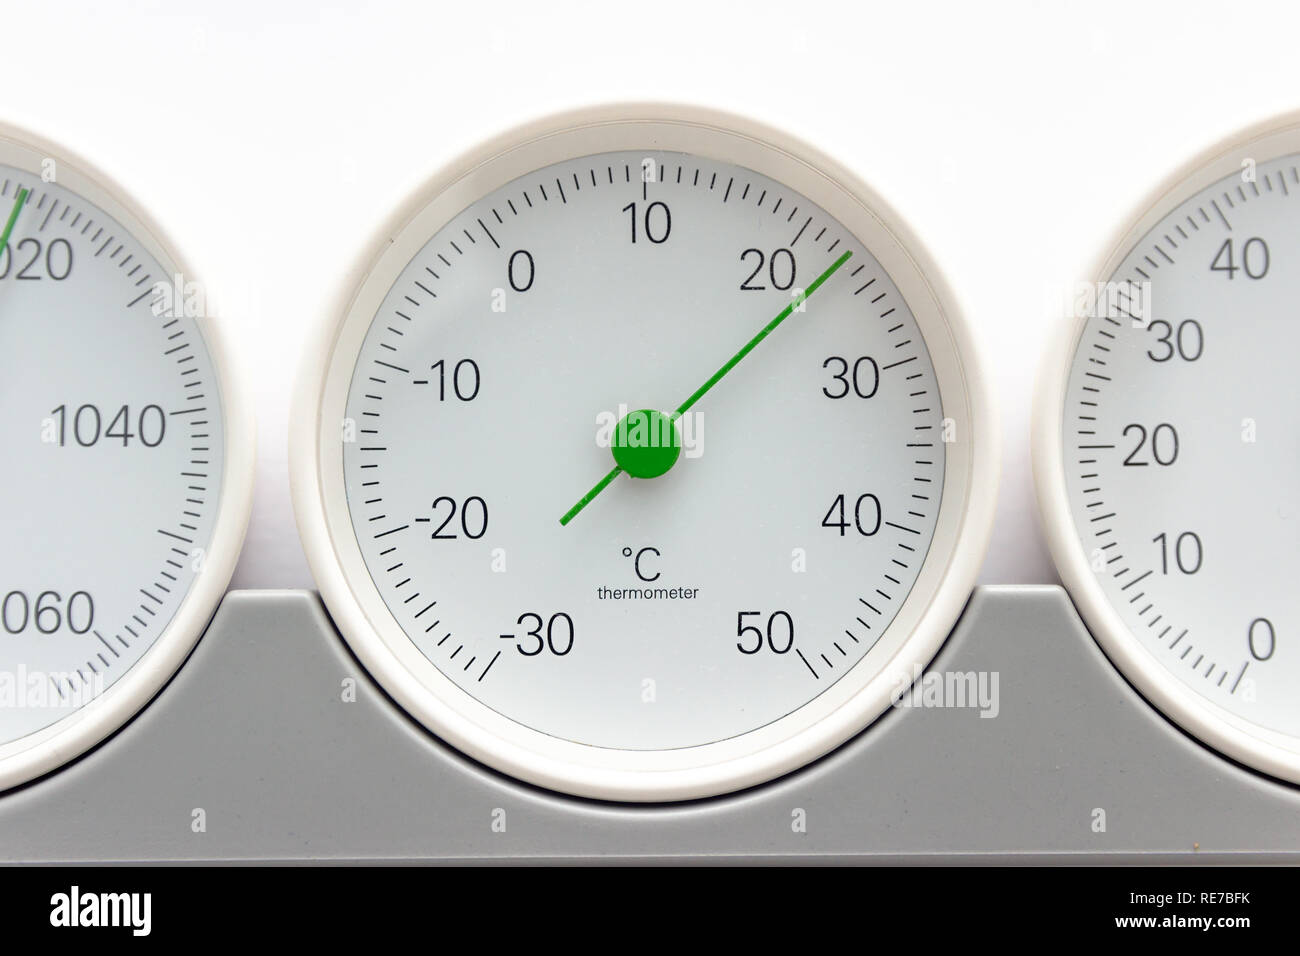 Rund Thermometer Hygrometer Analoges Feuchtigkeits Temperatur